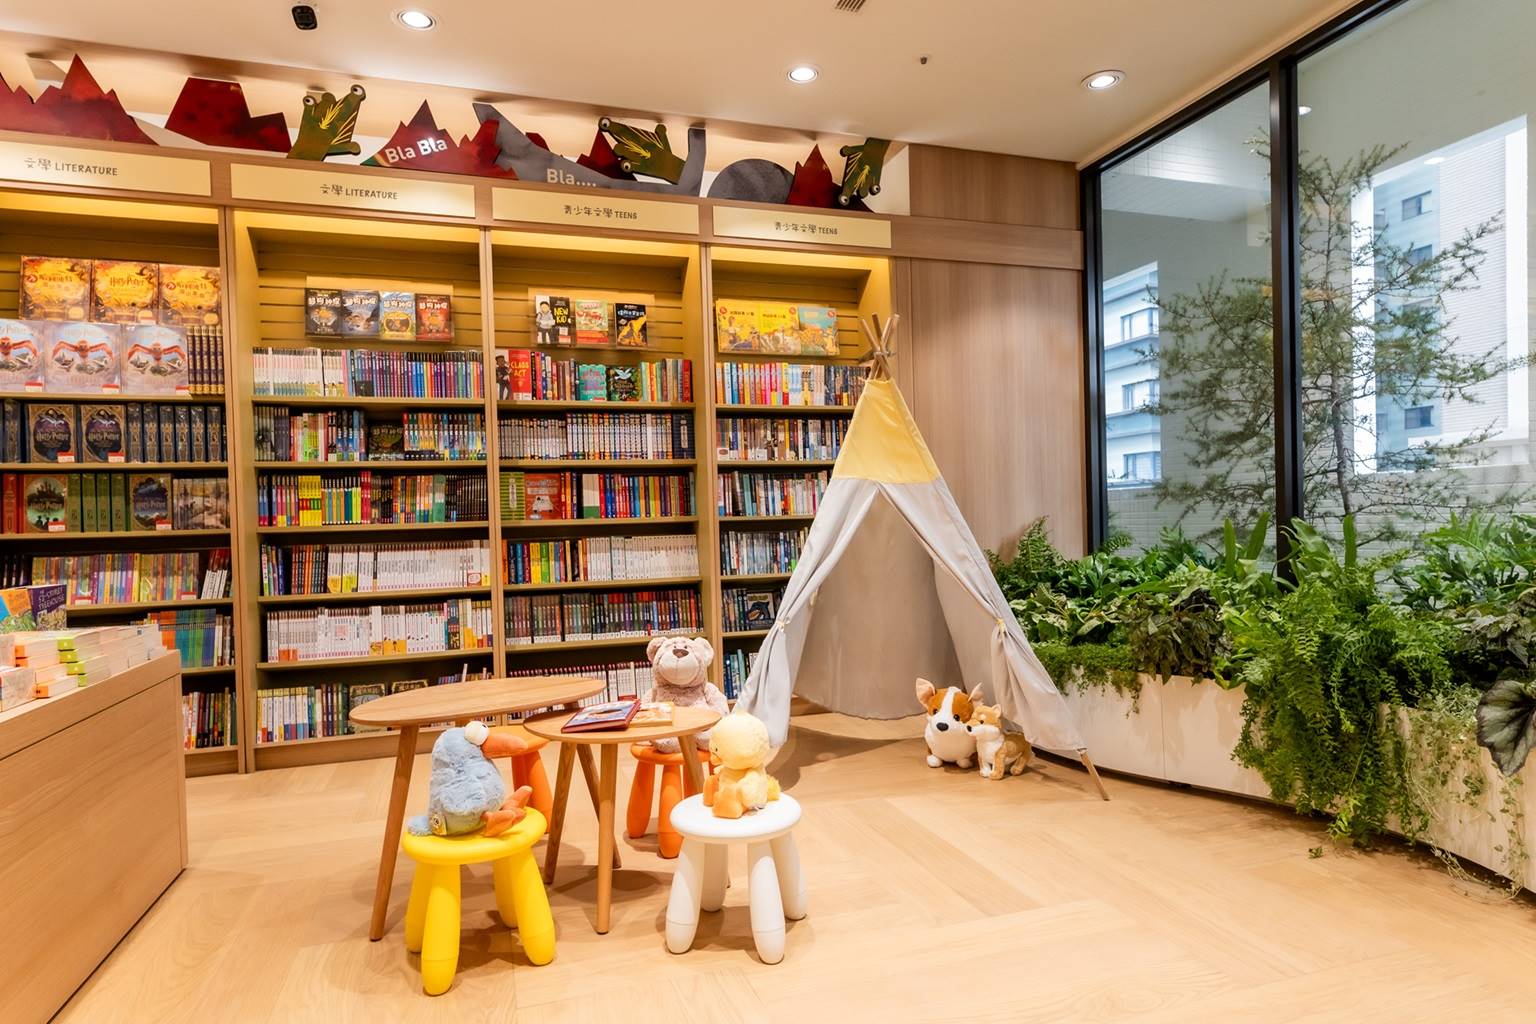 「親子共讀閱讀角落」專為小小讀者搭起露營風小帳篷、舒適沙發座，提供親子療癒的共讀空間